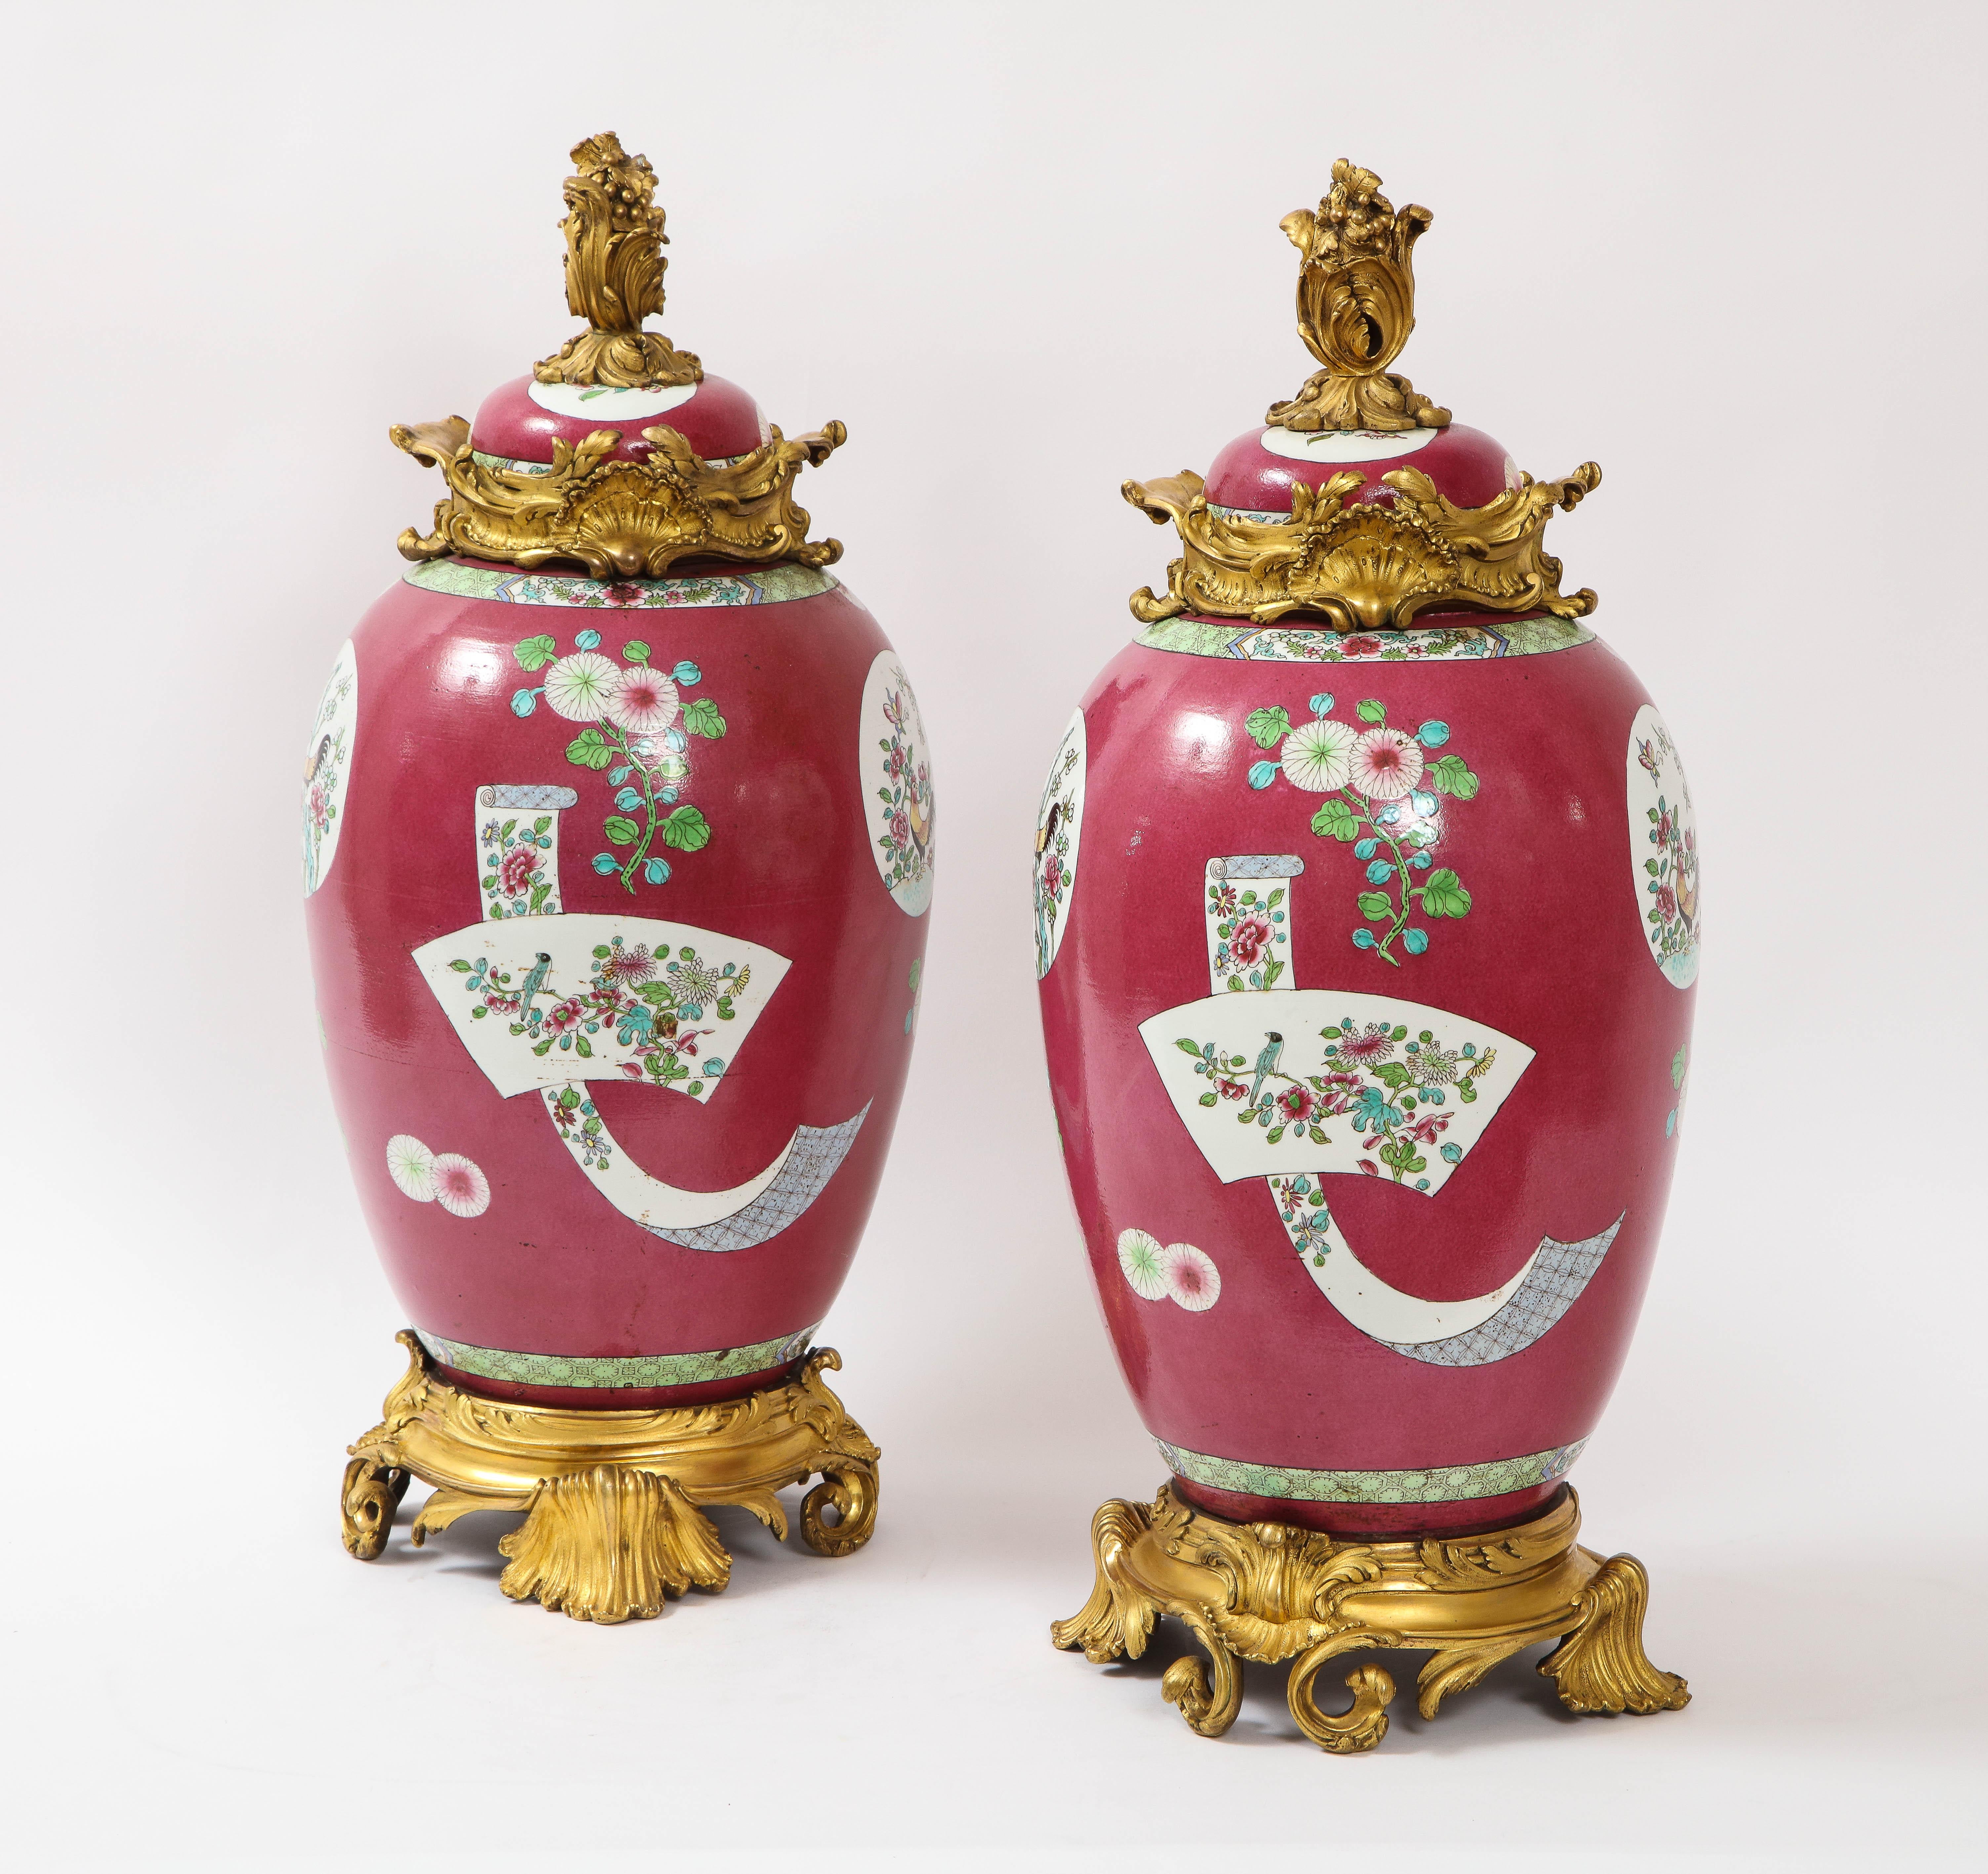 Une fabuleuse et grande paire de jarres/vases couverts en porcelaine chinoise de style Louis XVI du 19ème siècle, montés en bronze doré et à fond rouge coq. La porcelaine est d'un fond rouge avec des décorations en émail peintes à la main de coqs